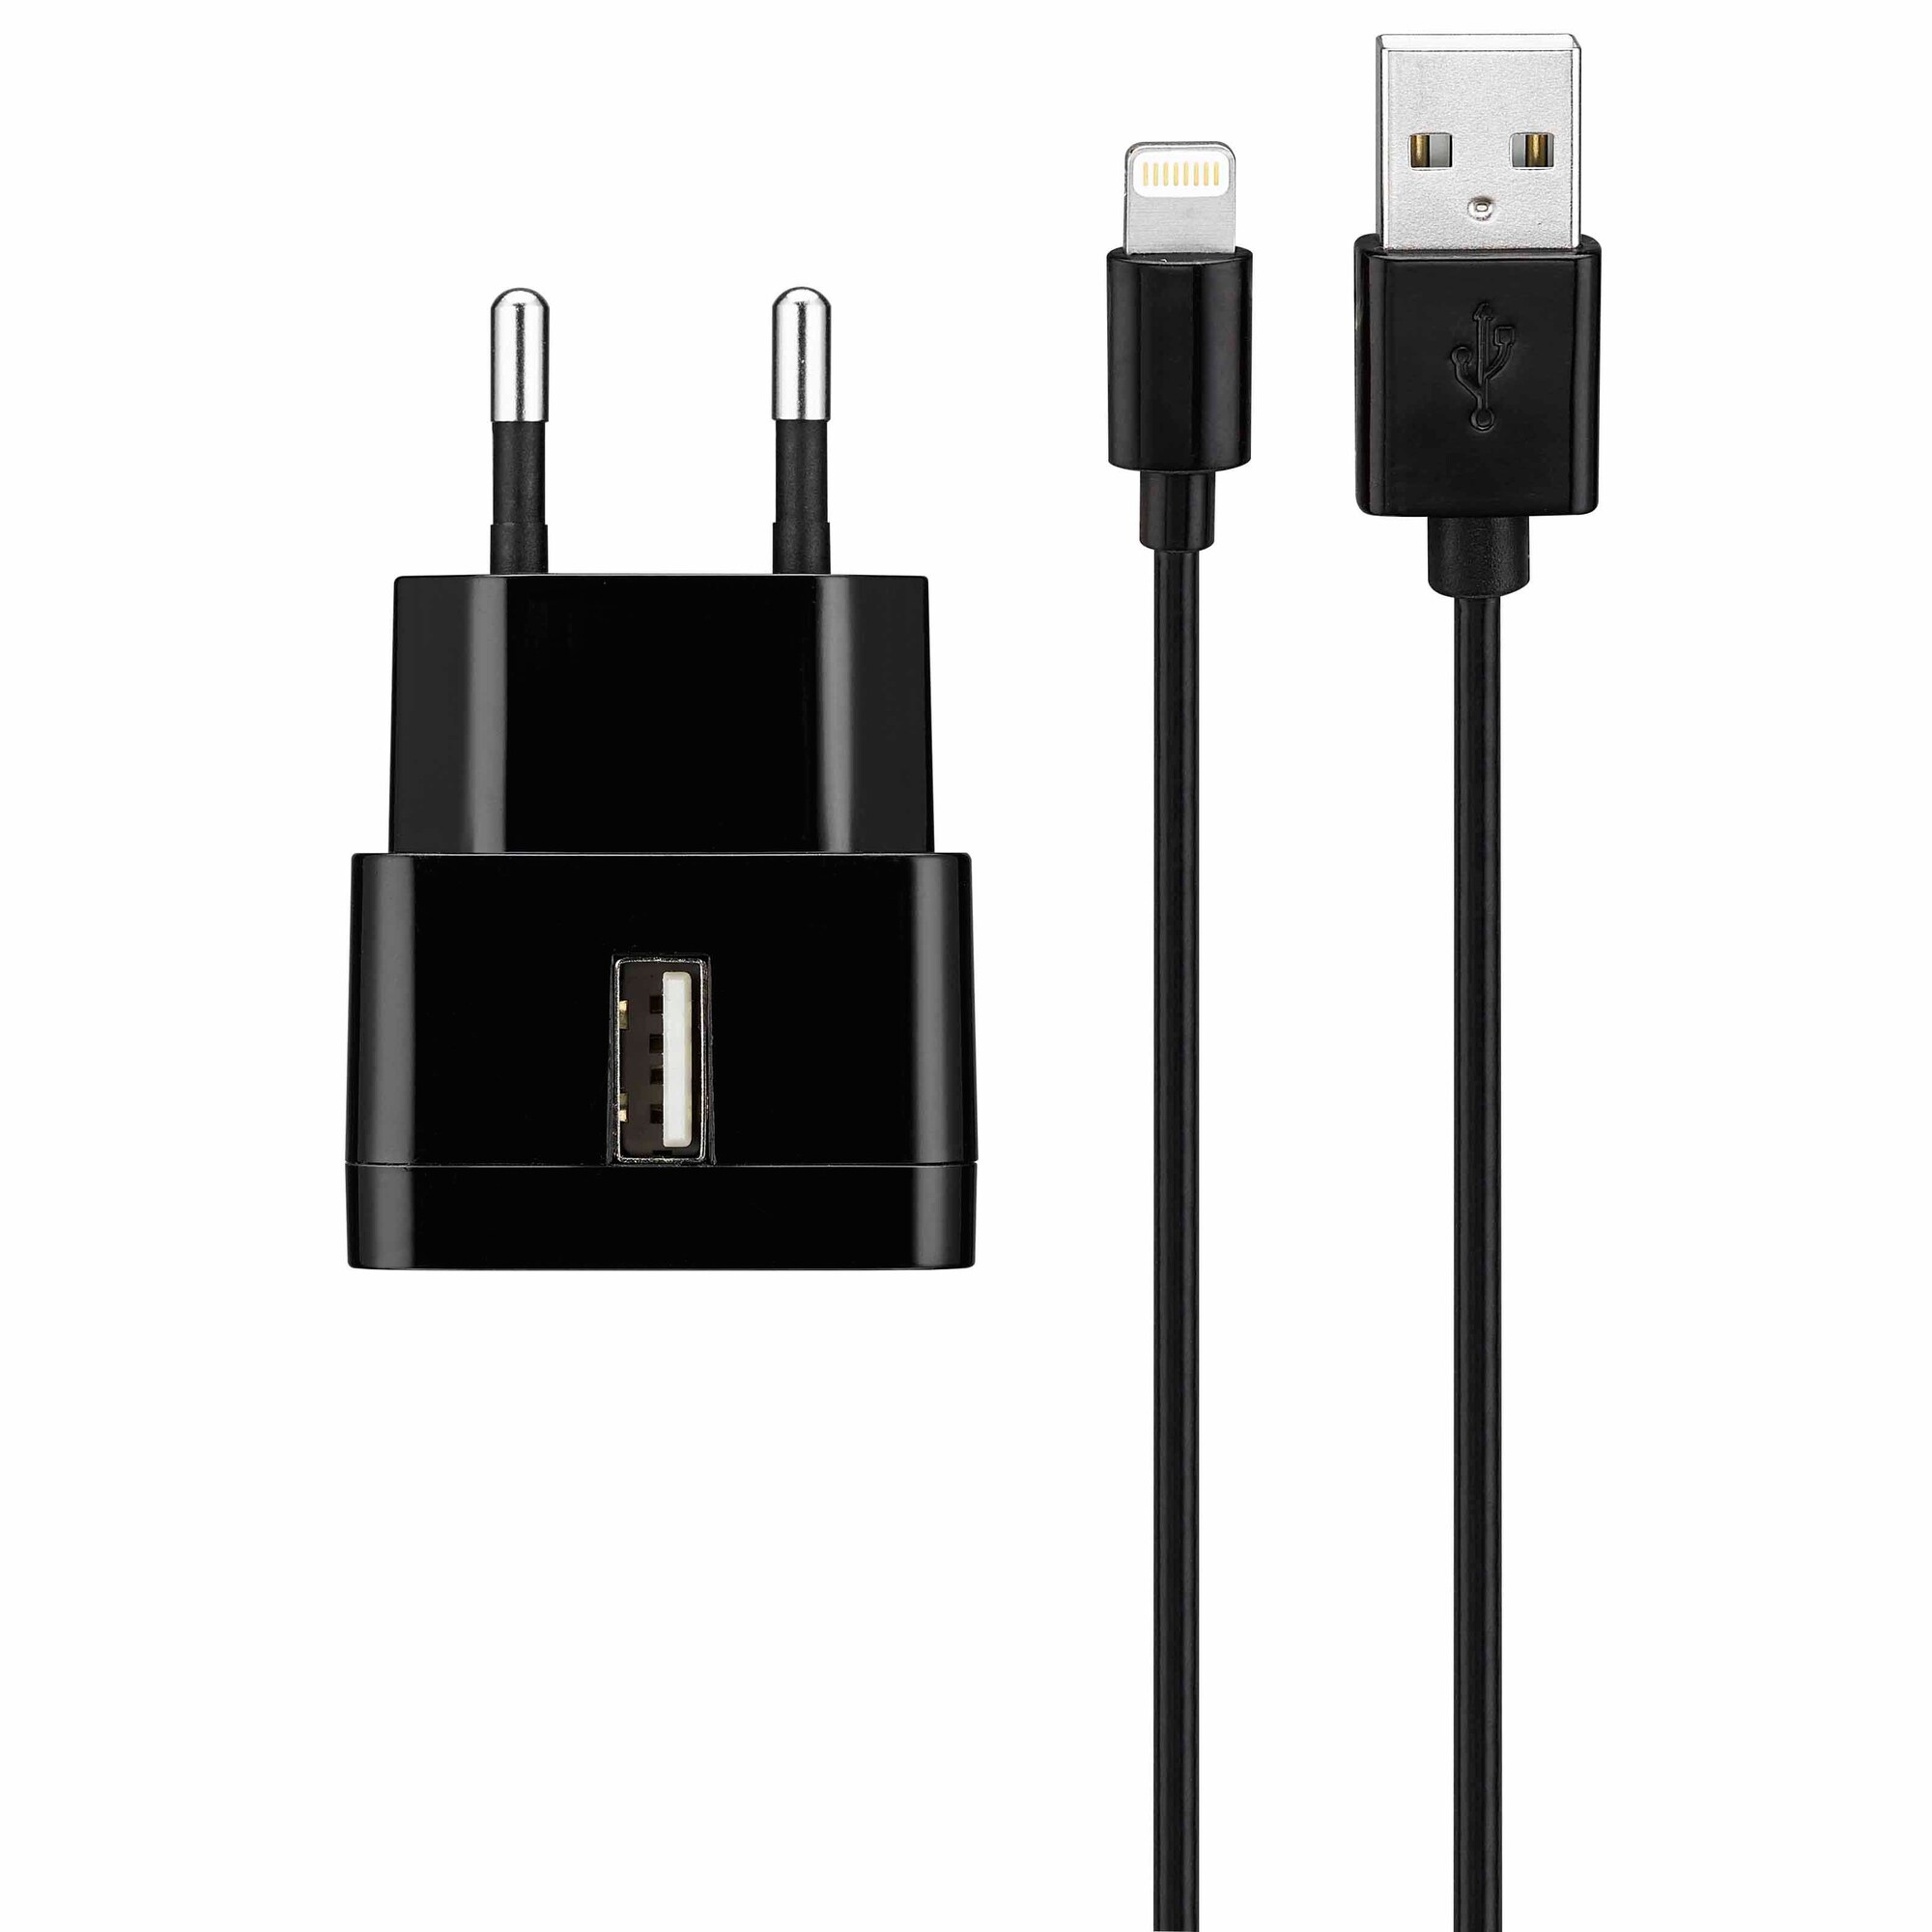 Goji Väggladdare 2.4A Lightning kabel (svart) - Väggladdare - Elgiganten